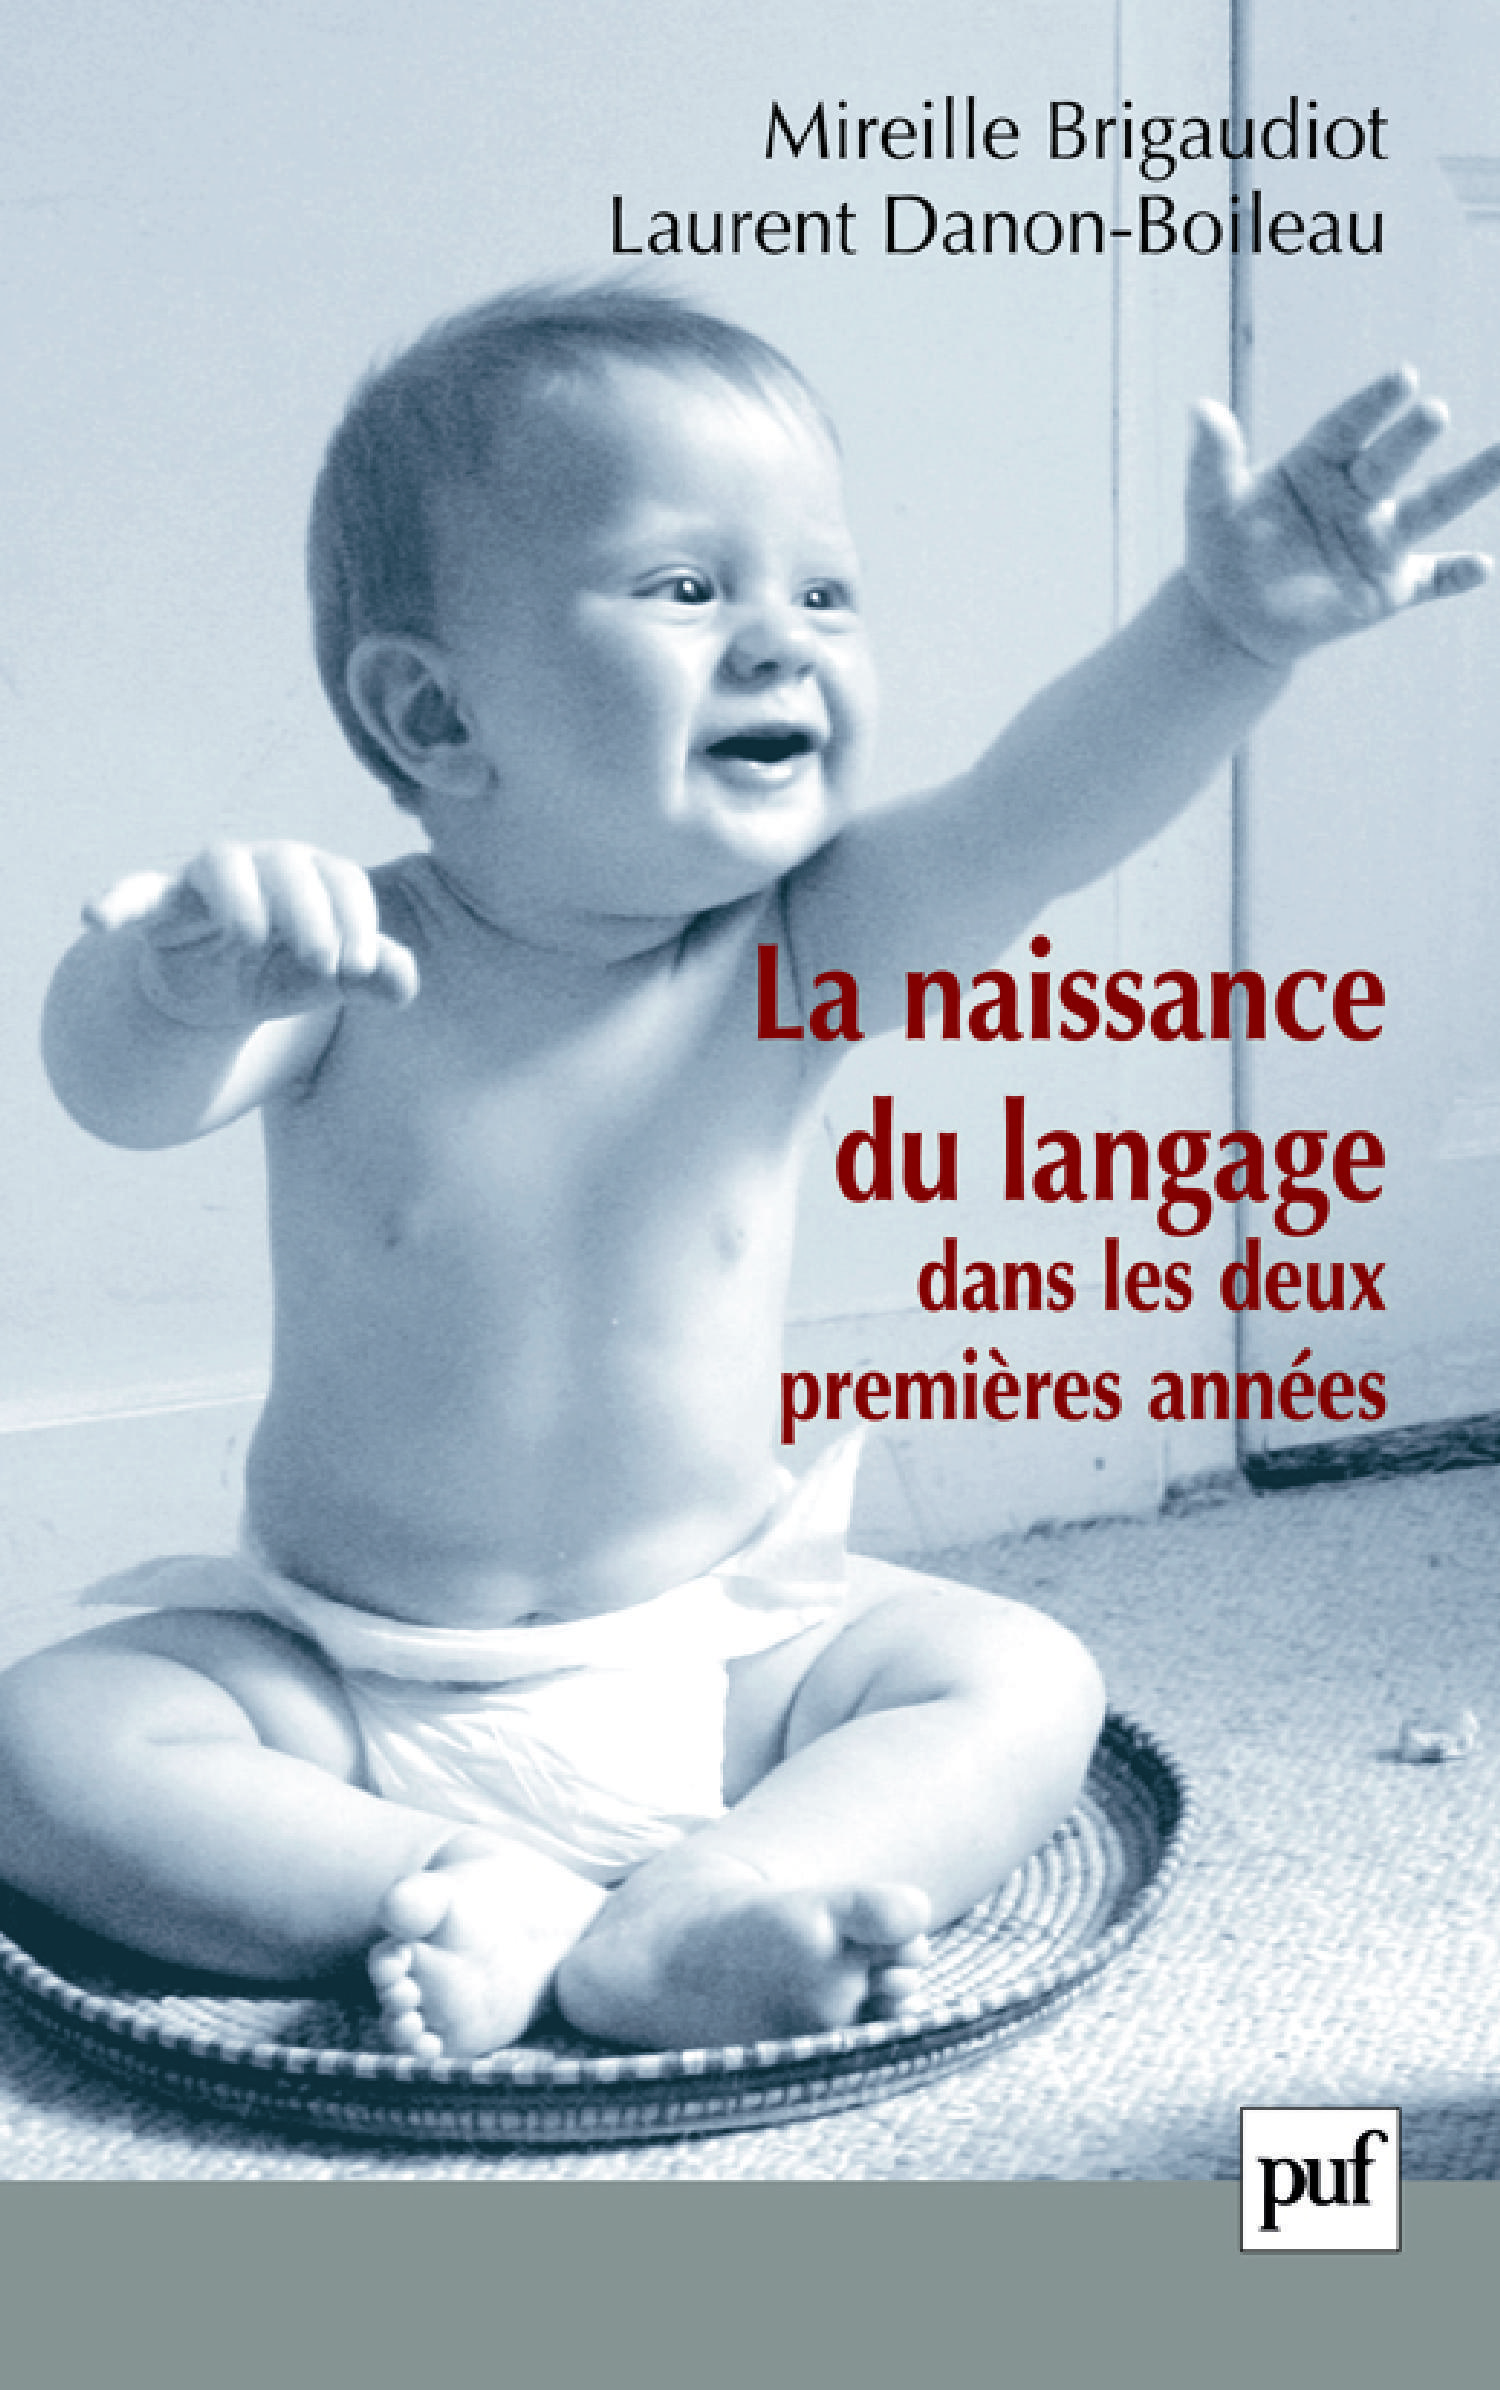 La naissance du langage dans les deux premières années De Mireille Brigaudiot et Laurent Danon-Boileau - Presses Universitaires de France